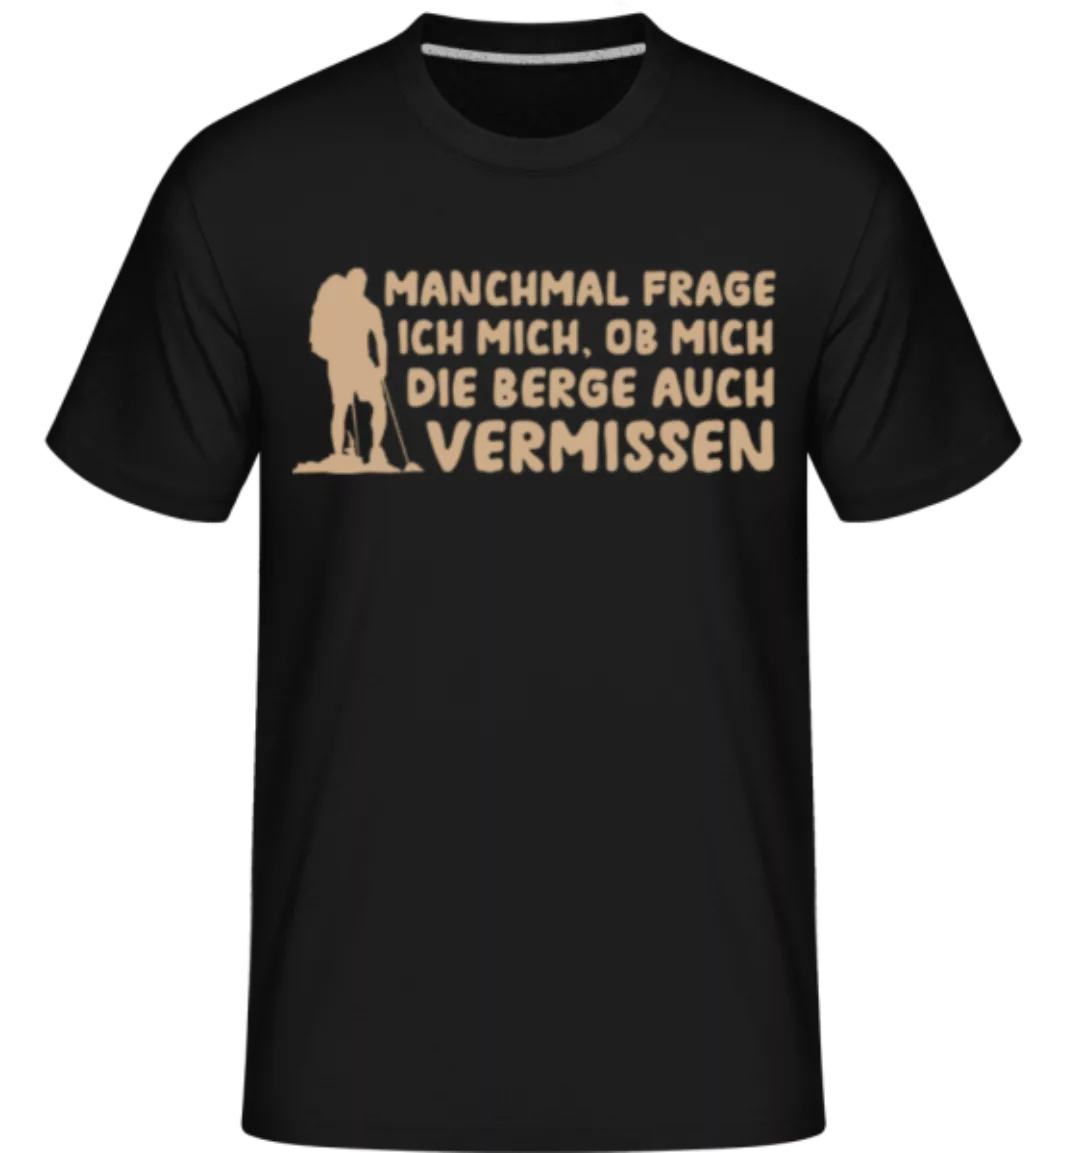 Ob Mich Die Berge Auch Vermissen · Shirtinator Männer T-Shirt günstig online kaufen